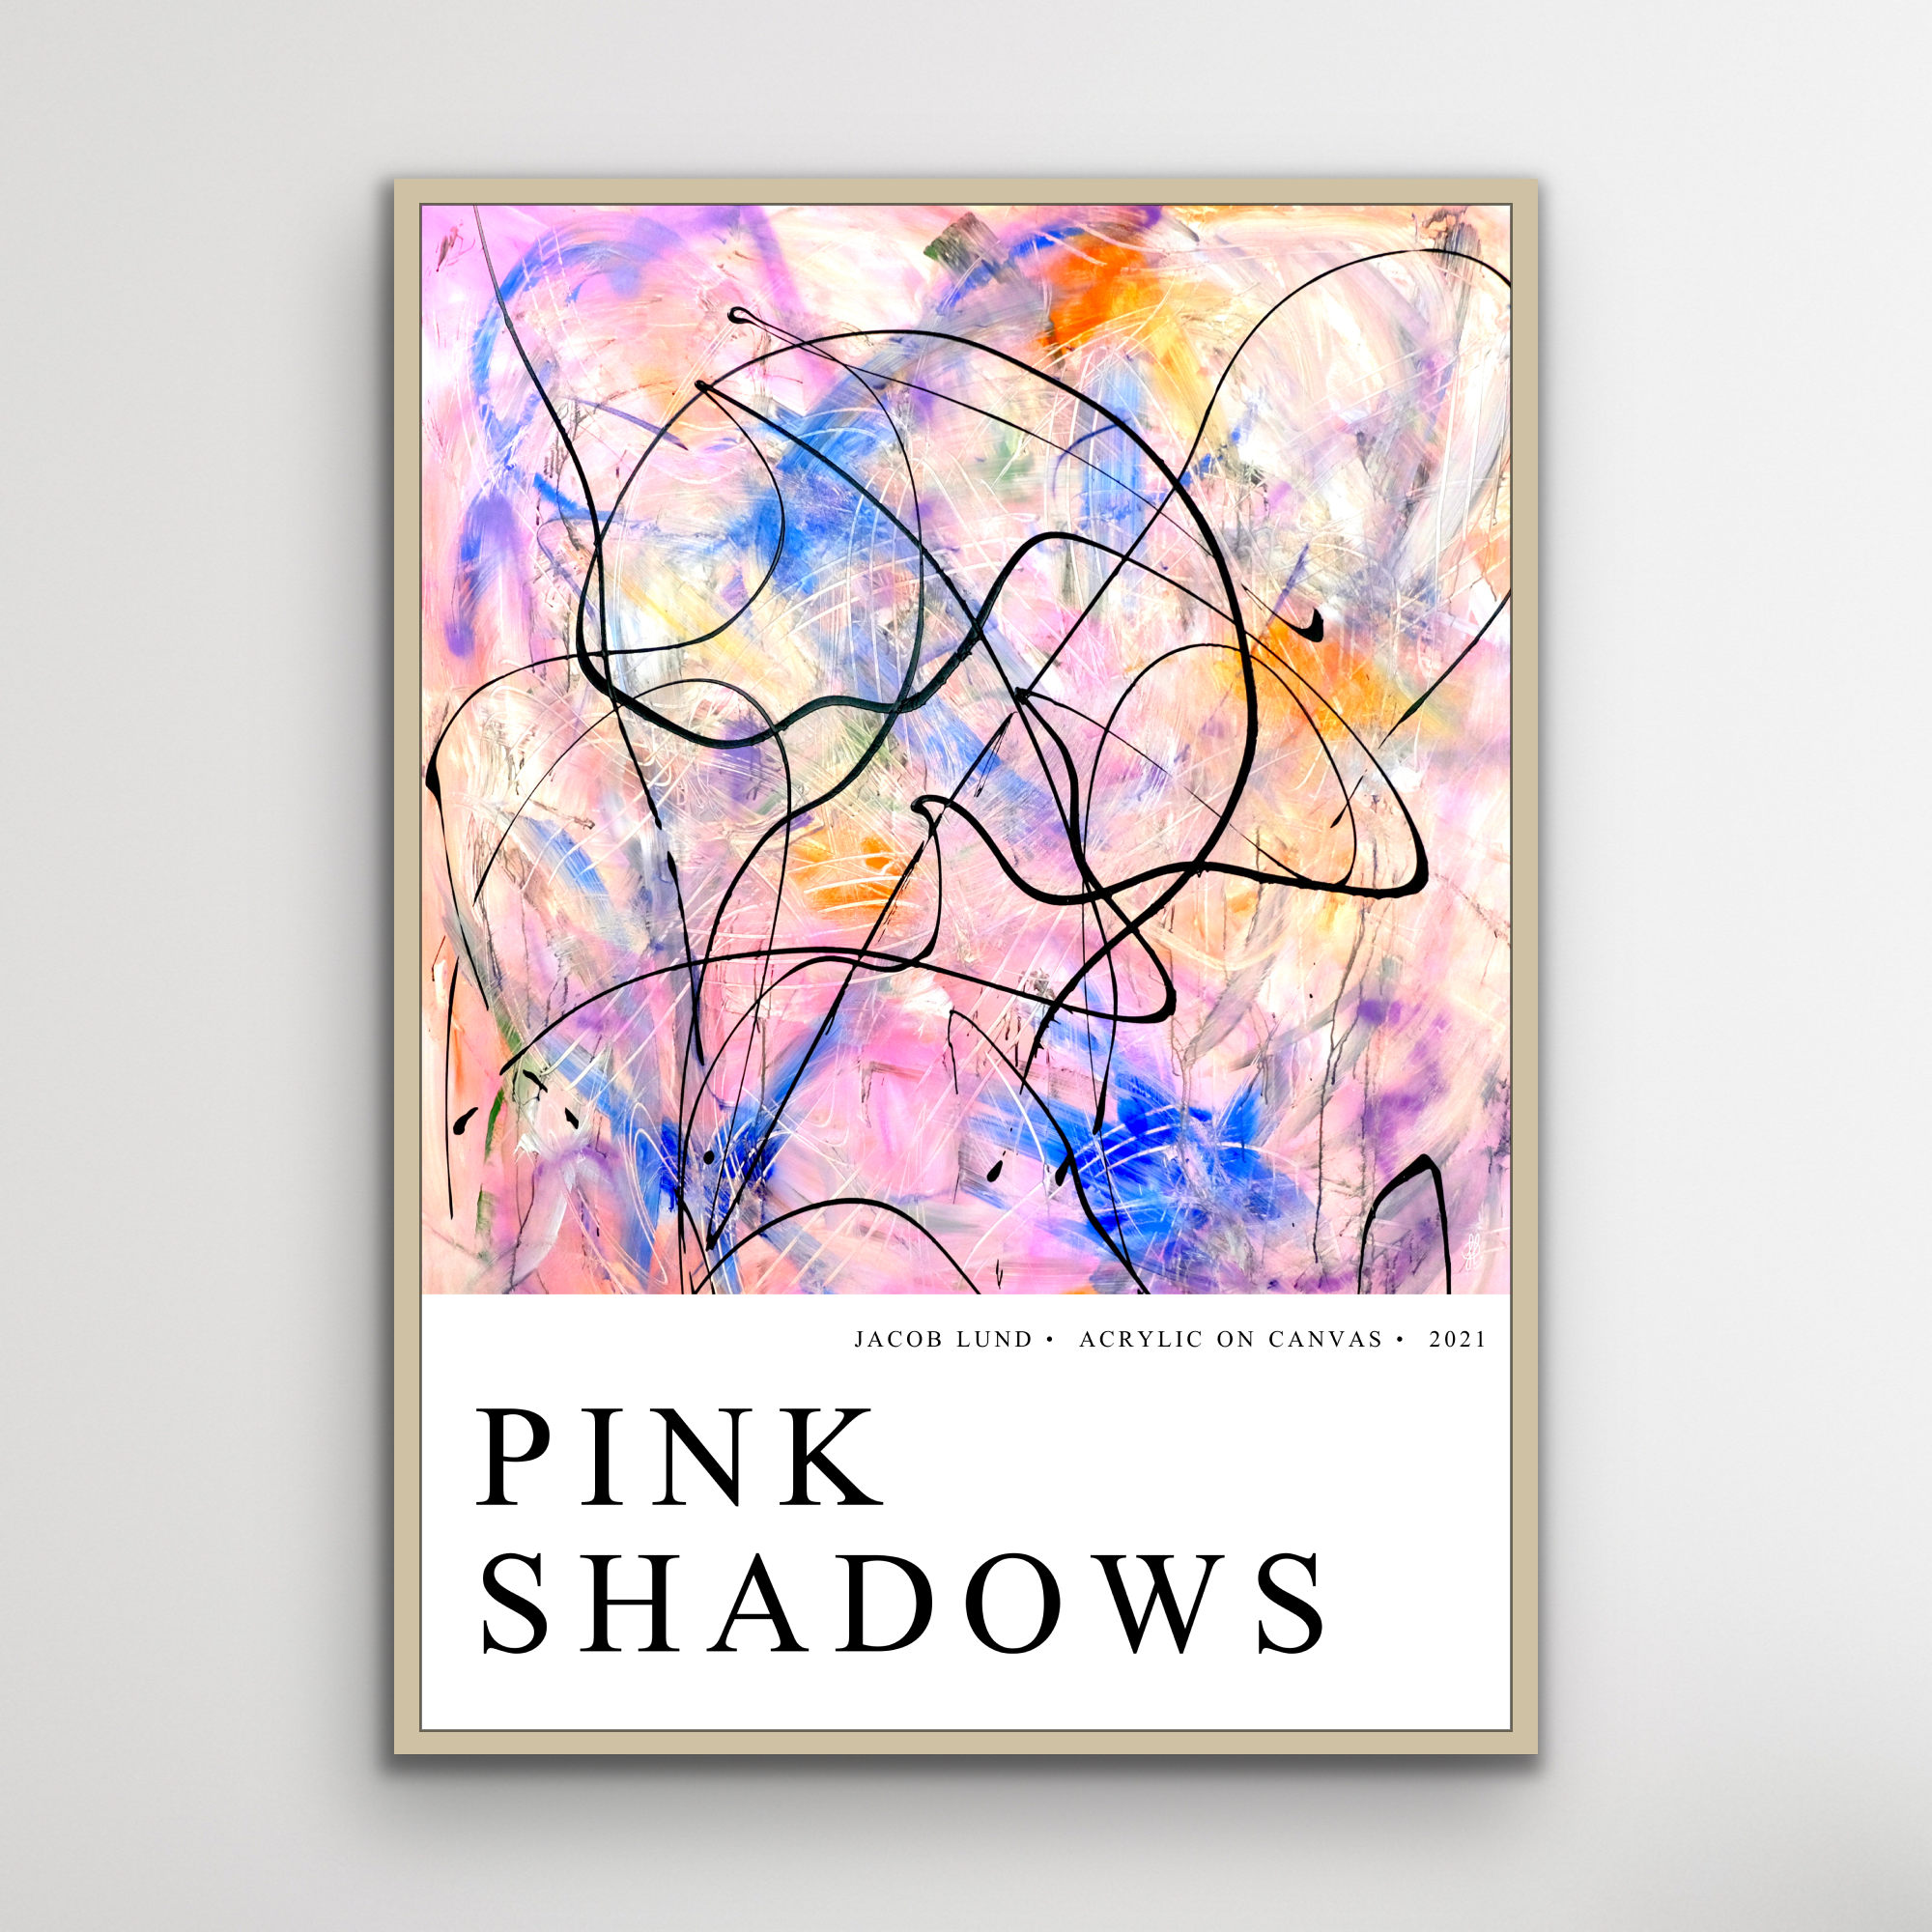 Plakat: "Pink Shadows" (weißer Hintergrund)